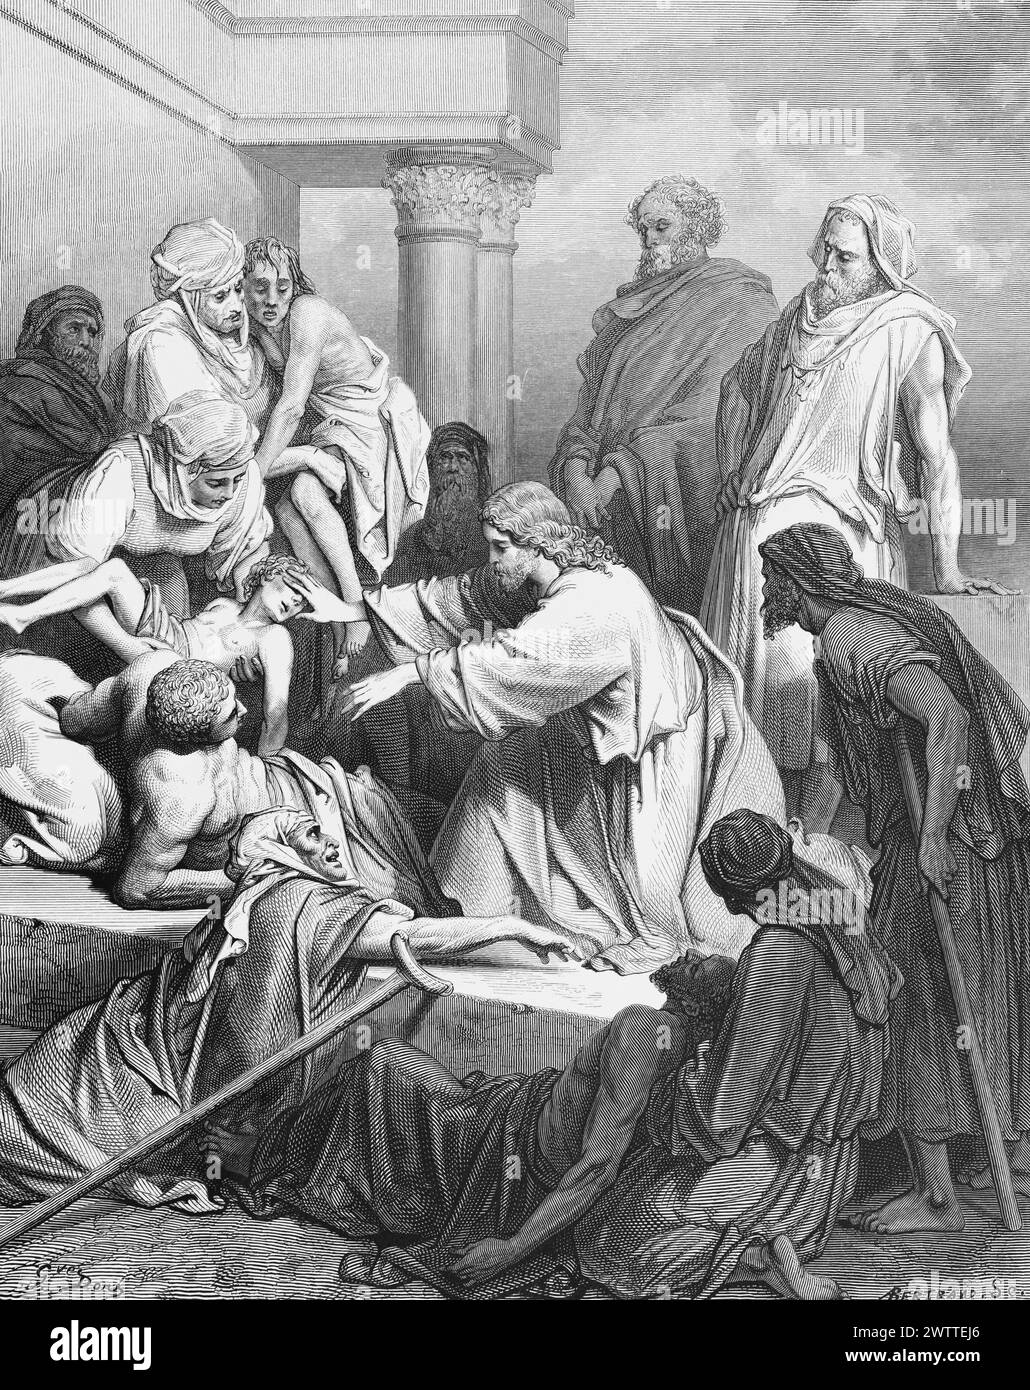 Jésus guérit les malades, ancien Testament, Bible, Evangile selon Matthieu 4, ilustration historique 1886 Banque D'Images